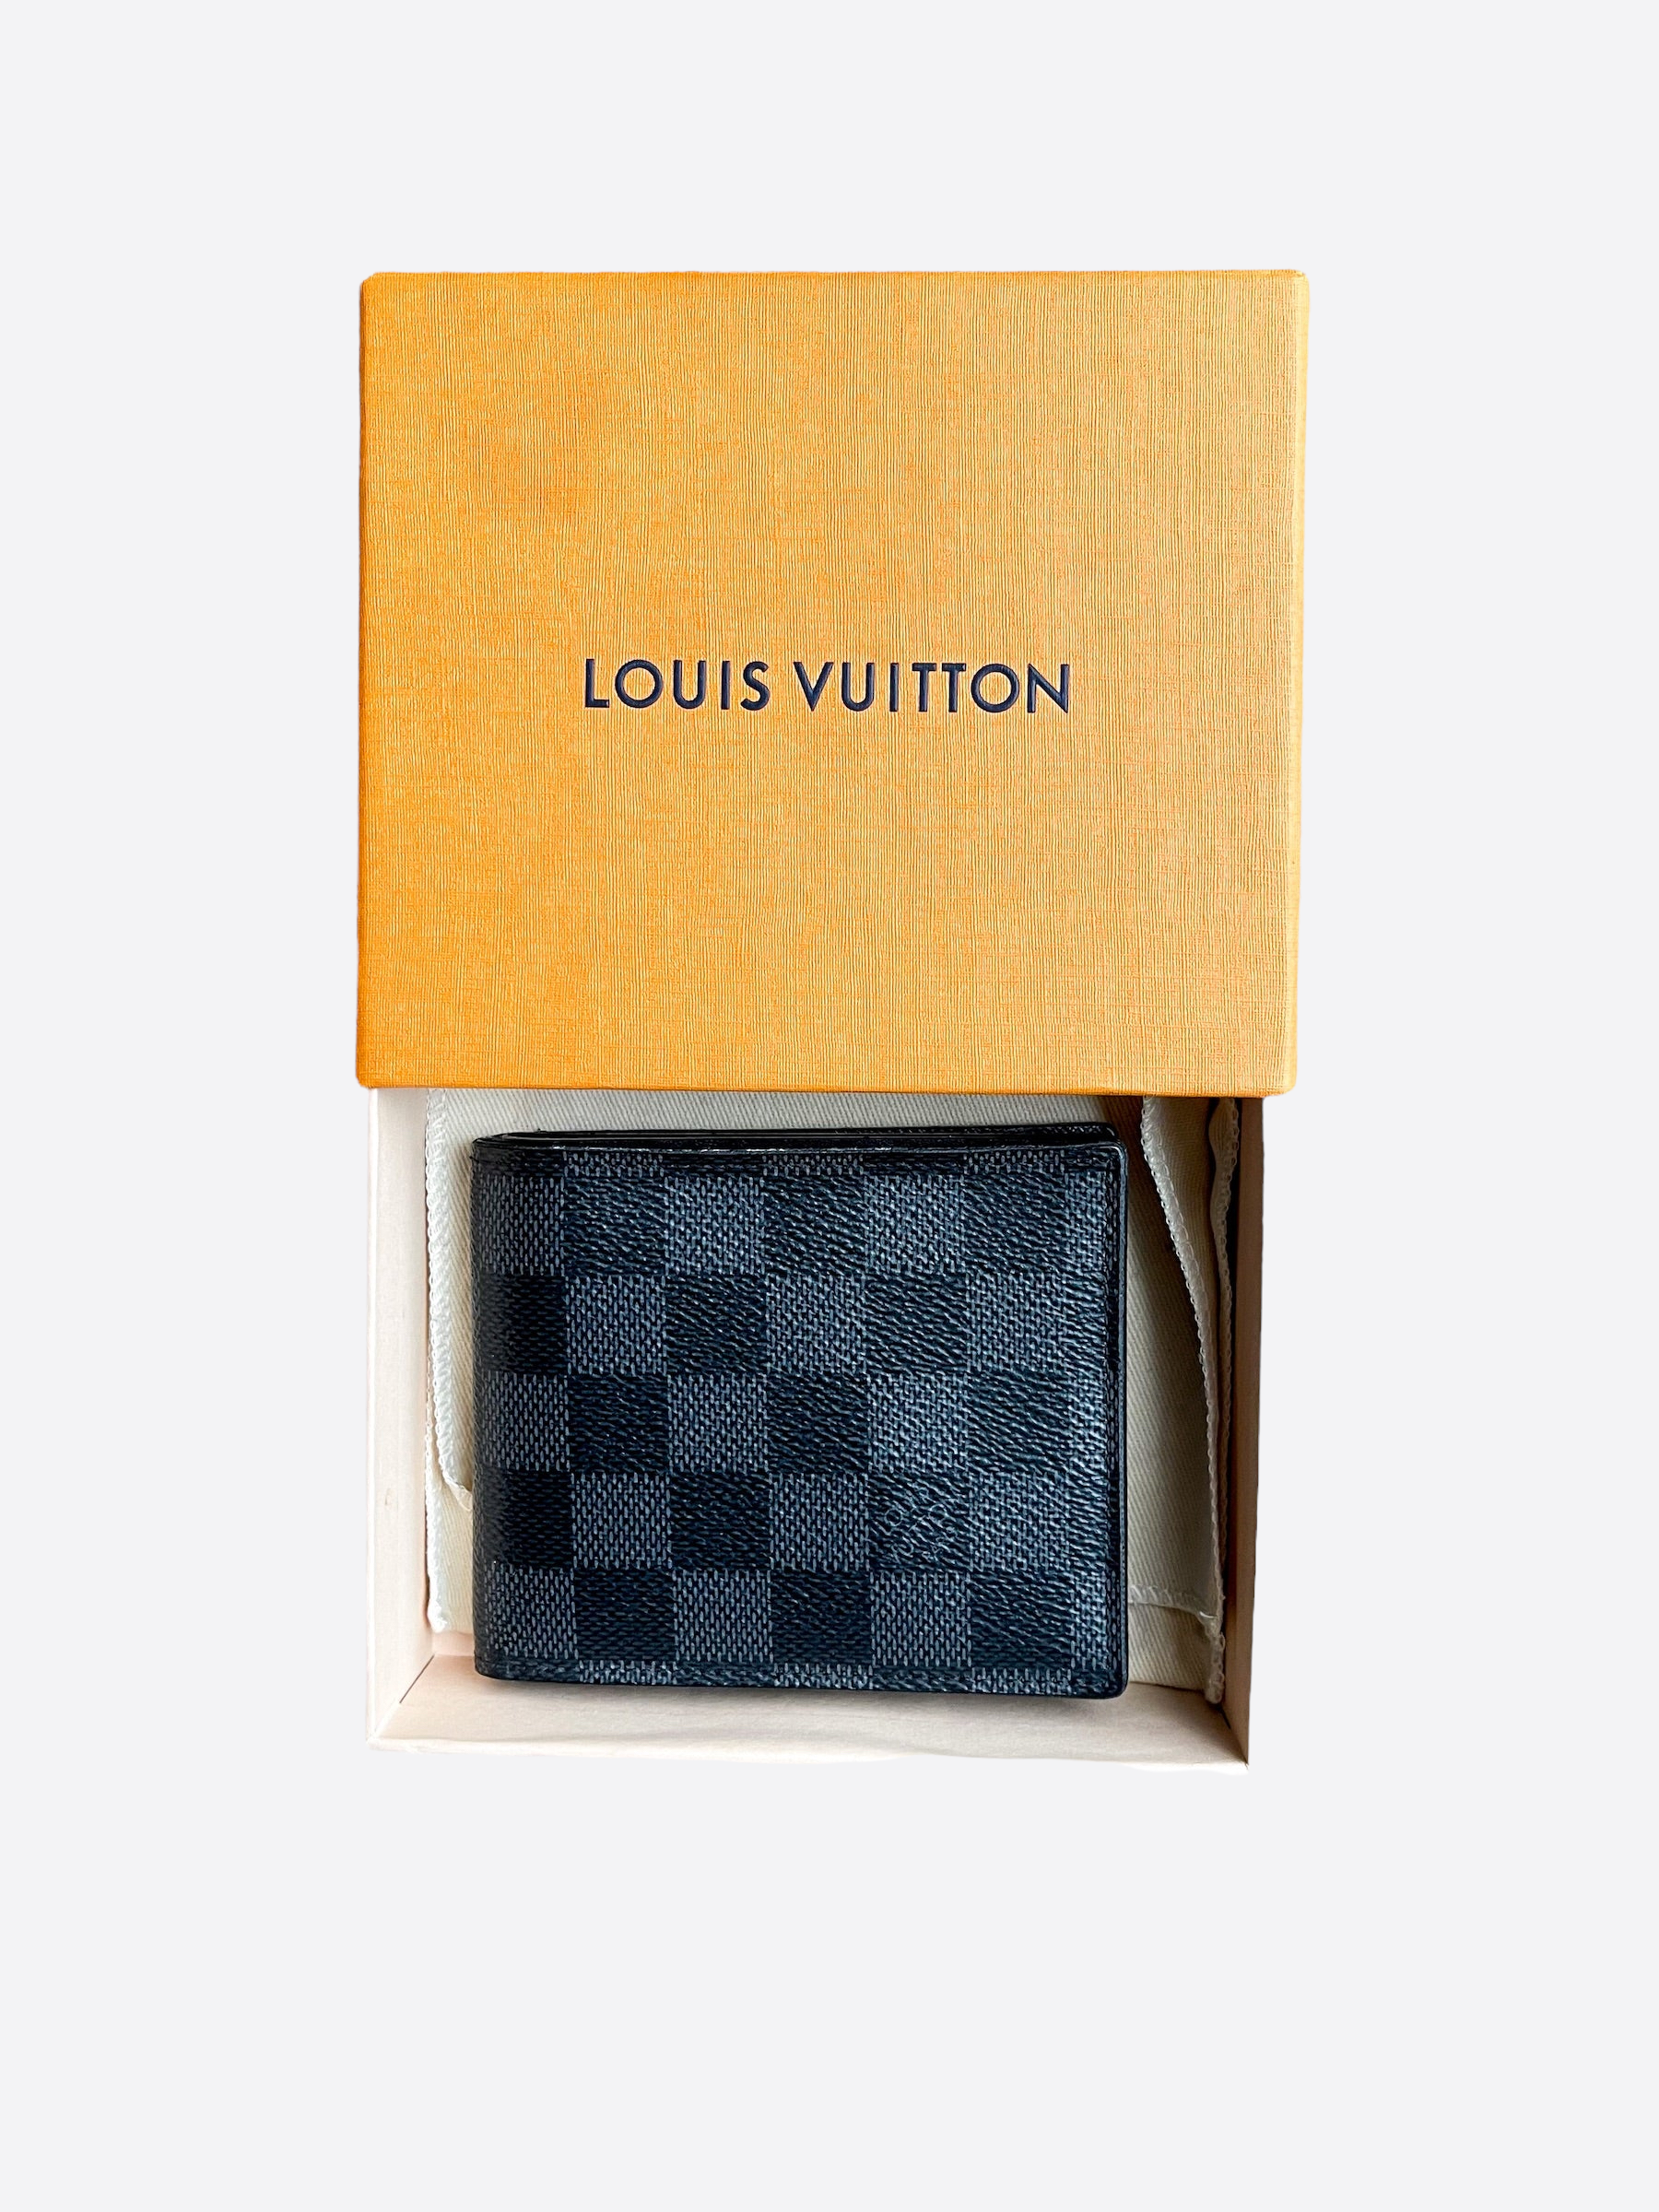 Louis Vuitton Damier Azur Multiple Wallet 1214lv31 For Sale at 1stDibs  louis  vuitton wallet, louis vuitton mens wallet, louis vuitton multiple wallet